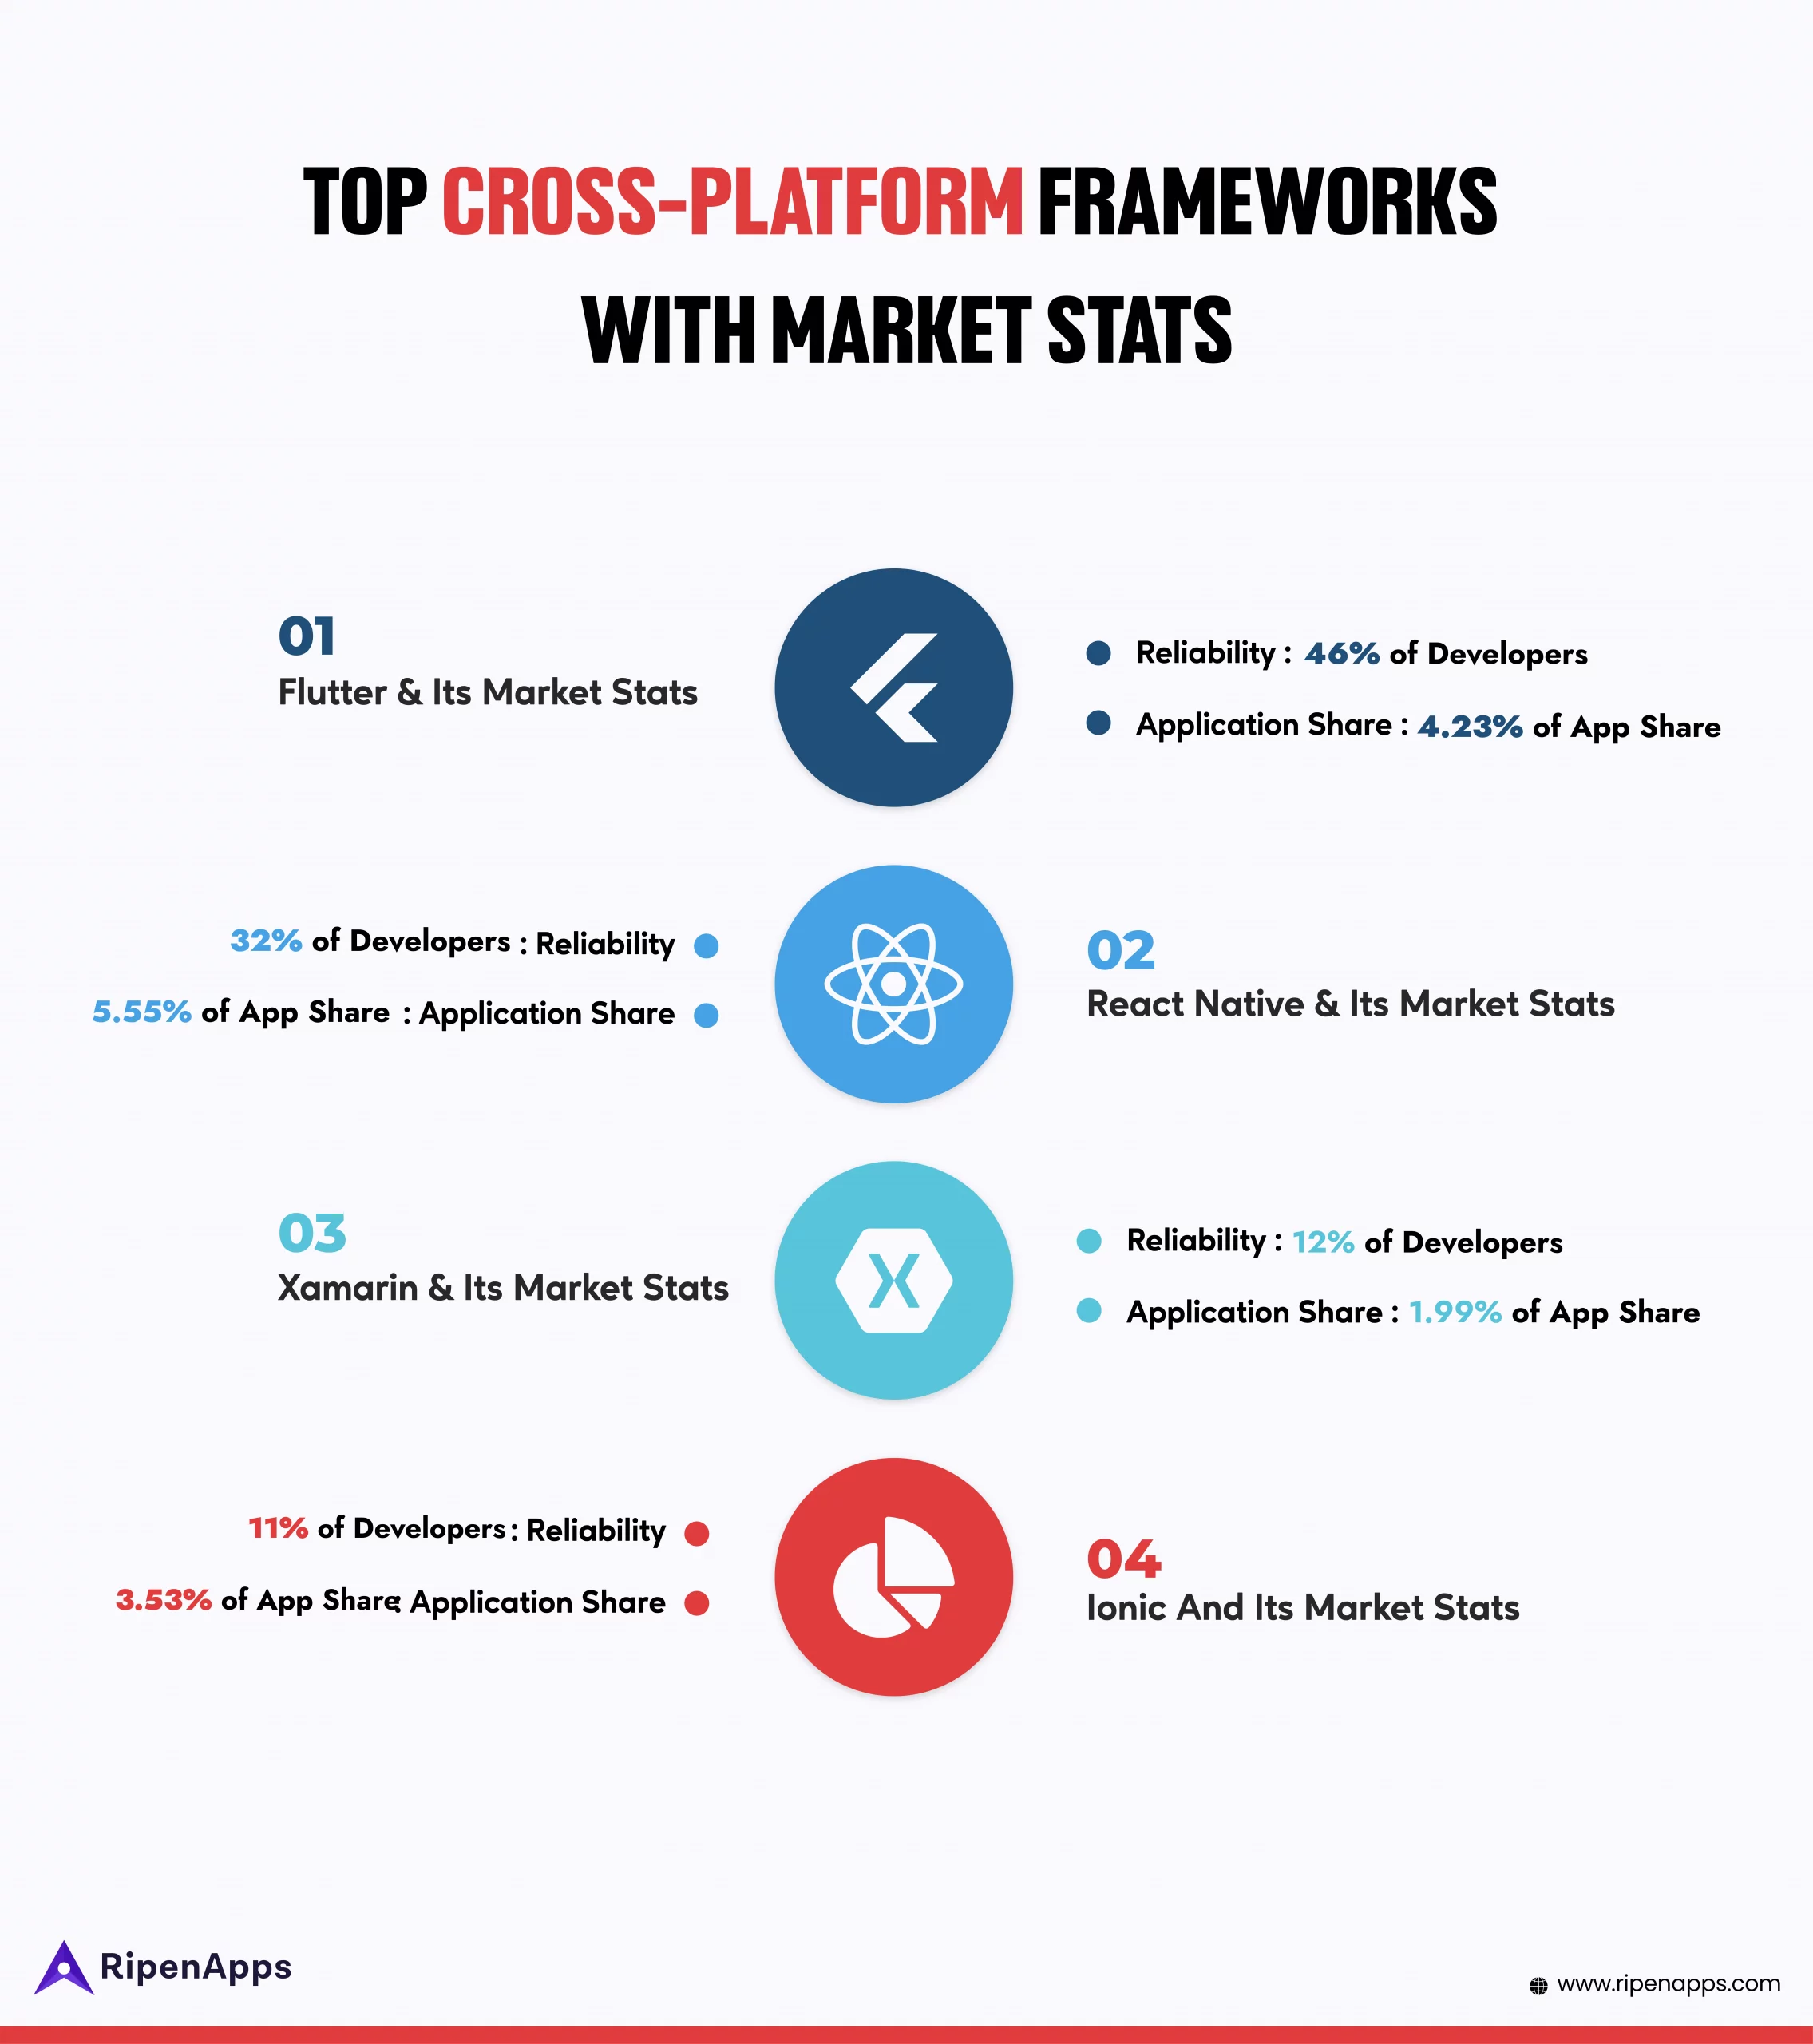 Top Cross-Platform Frameworks With Market Stats